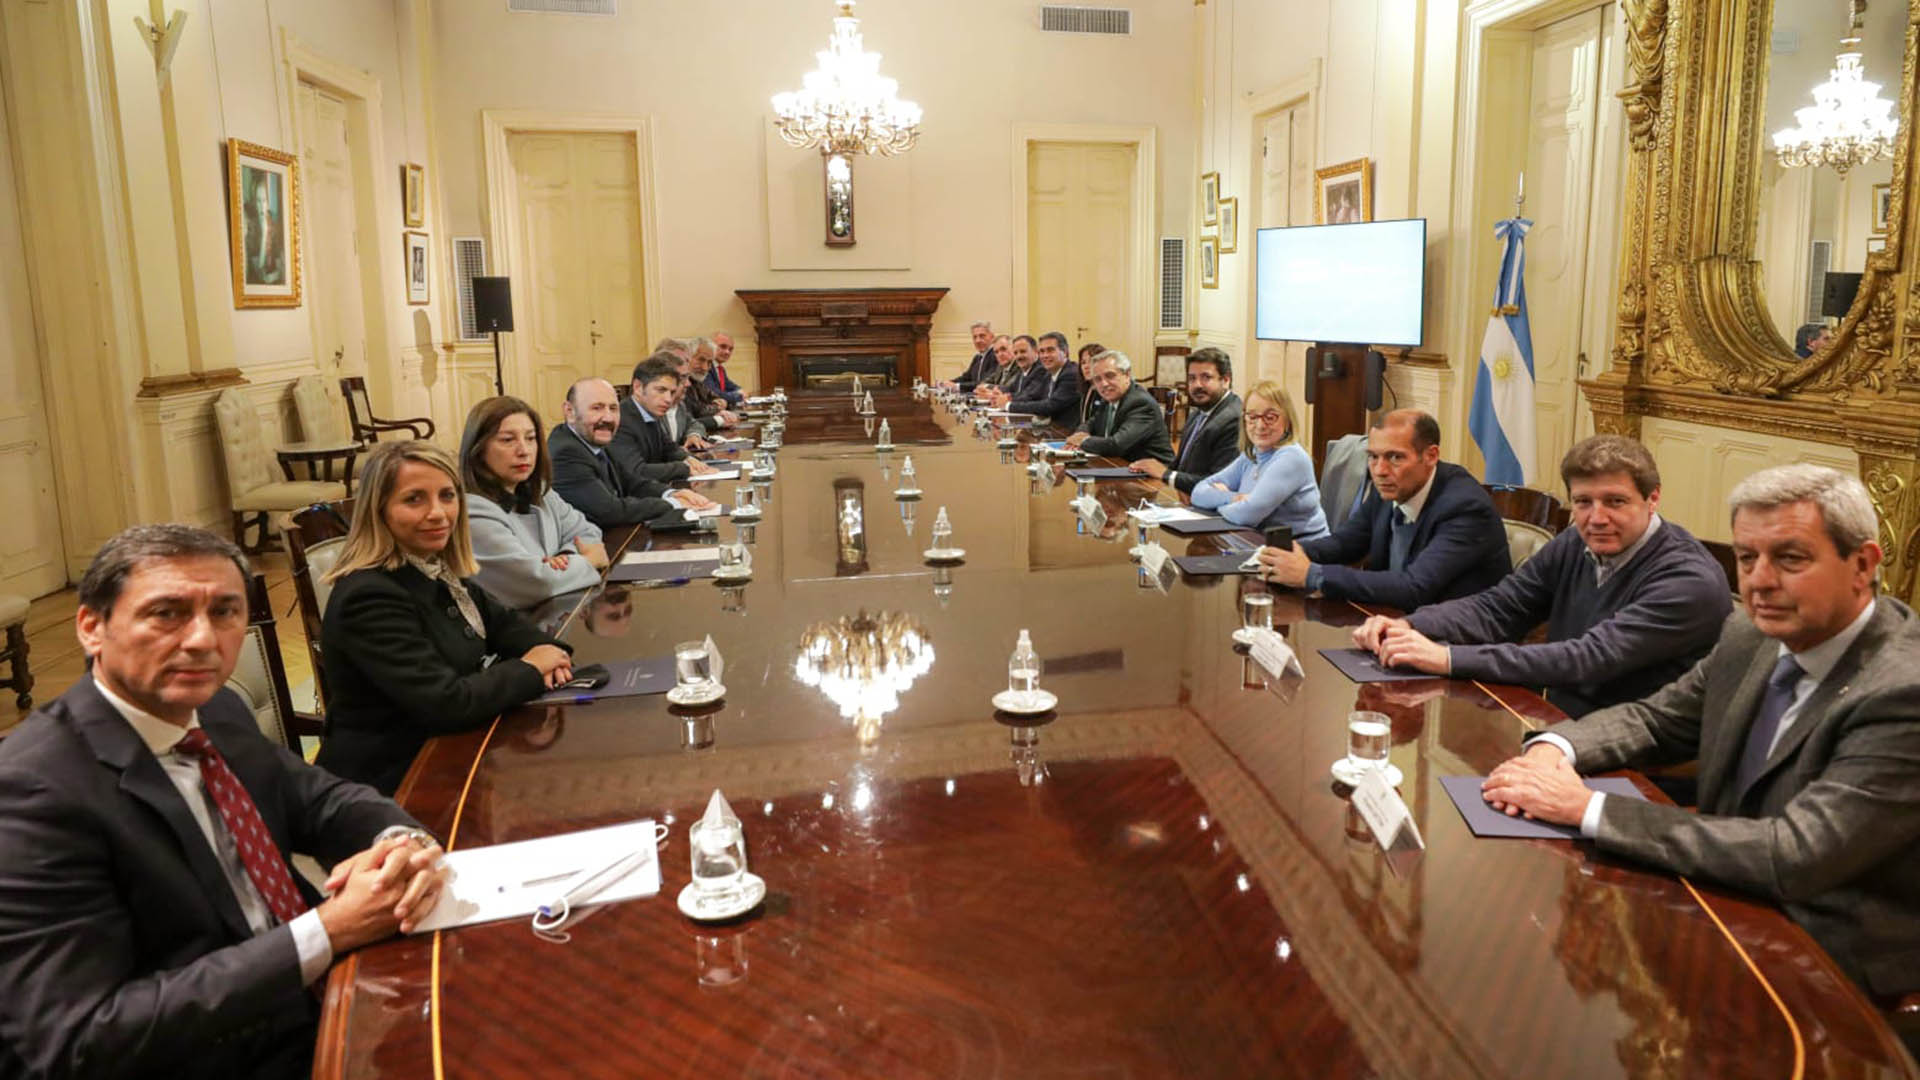 La reunión se llevó a cabo en la Casa Rosada y duró 1:10 horas